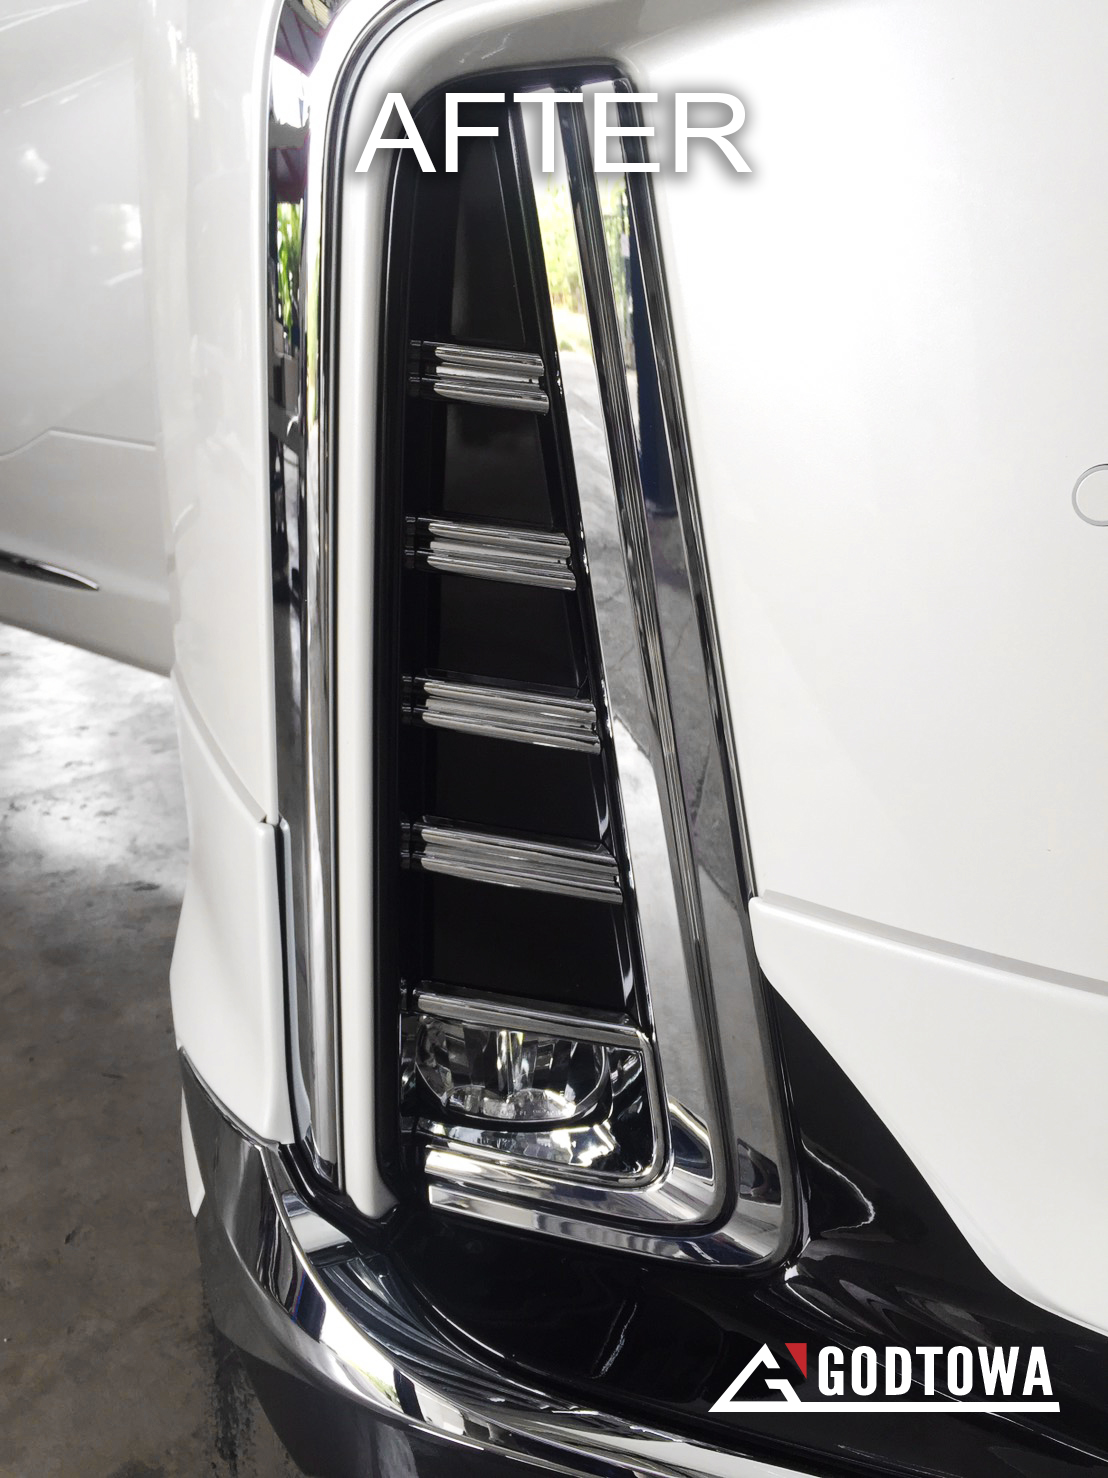 โครเมียมครอบไฟตัดหมอก สำหรับรถยนต์ ALPHARD SC รุ่นปี 2018-2021 โครเมียมครอบไฟตัดหมอก สำหรับรถยนต์อัลพาร์ด alphard Body kits ครอบไฟตัดหมอกอัลพาร์ด ของแต่งรถยนต์alphard sc